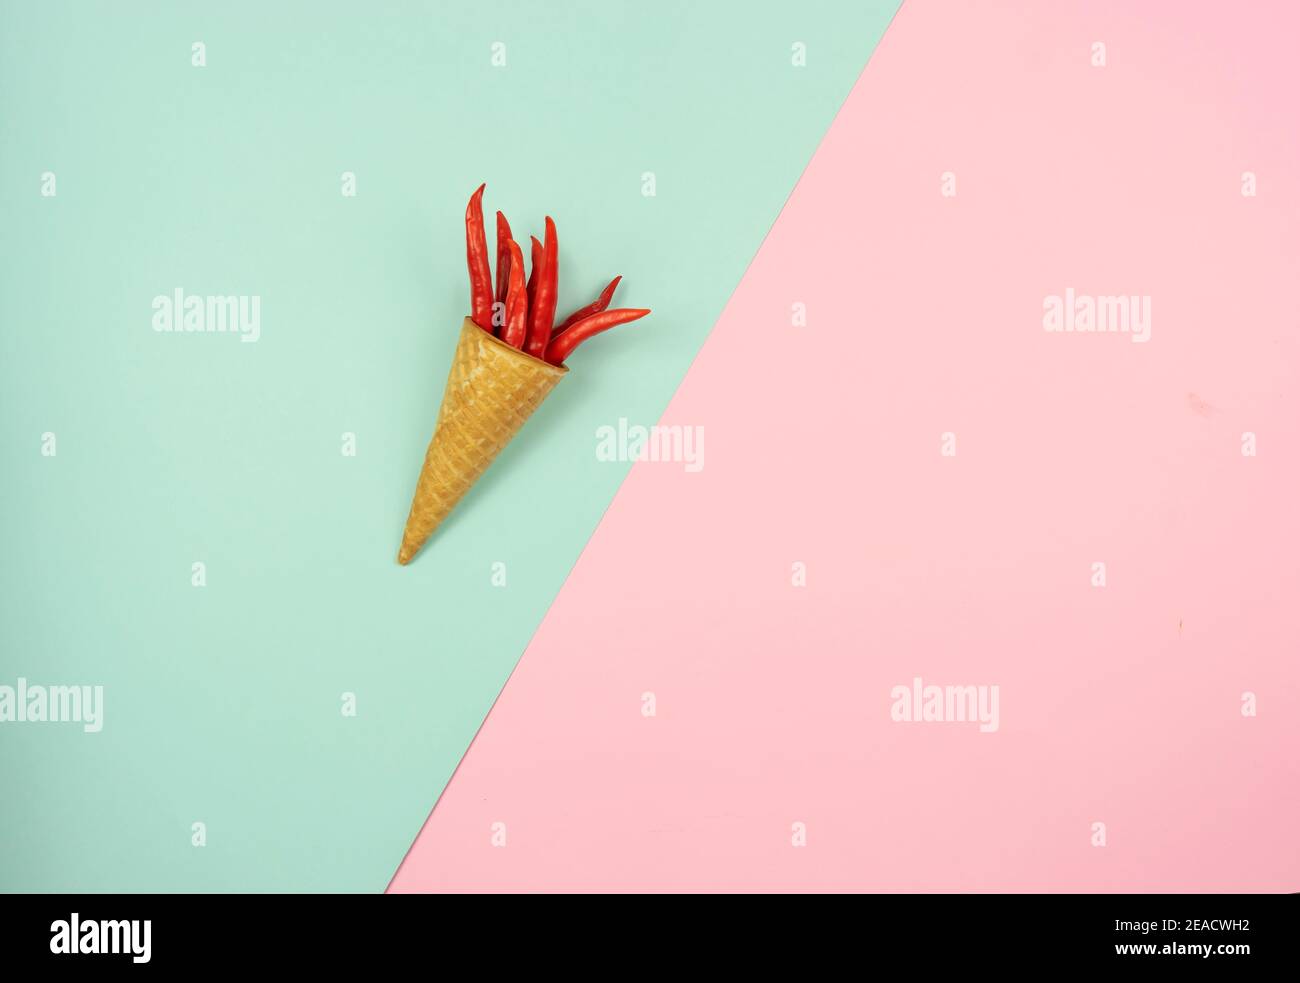 Ein Waffelkegel mit einem Bund roter Chili-Paprika darin iles auf einem bunten Hintergrund. Speicherplatz kopieren Stockfoto